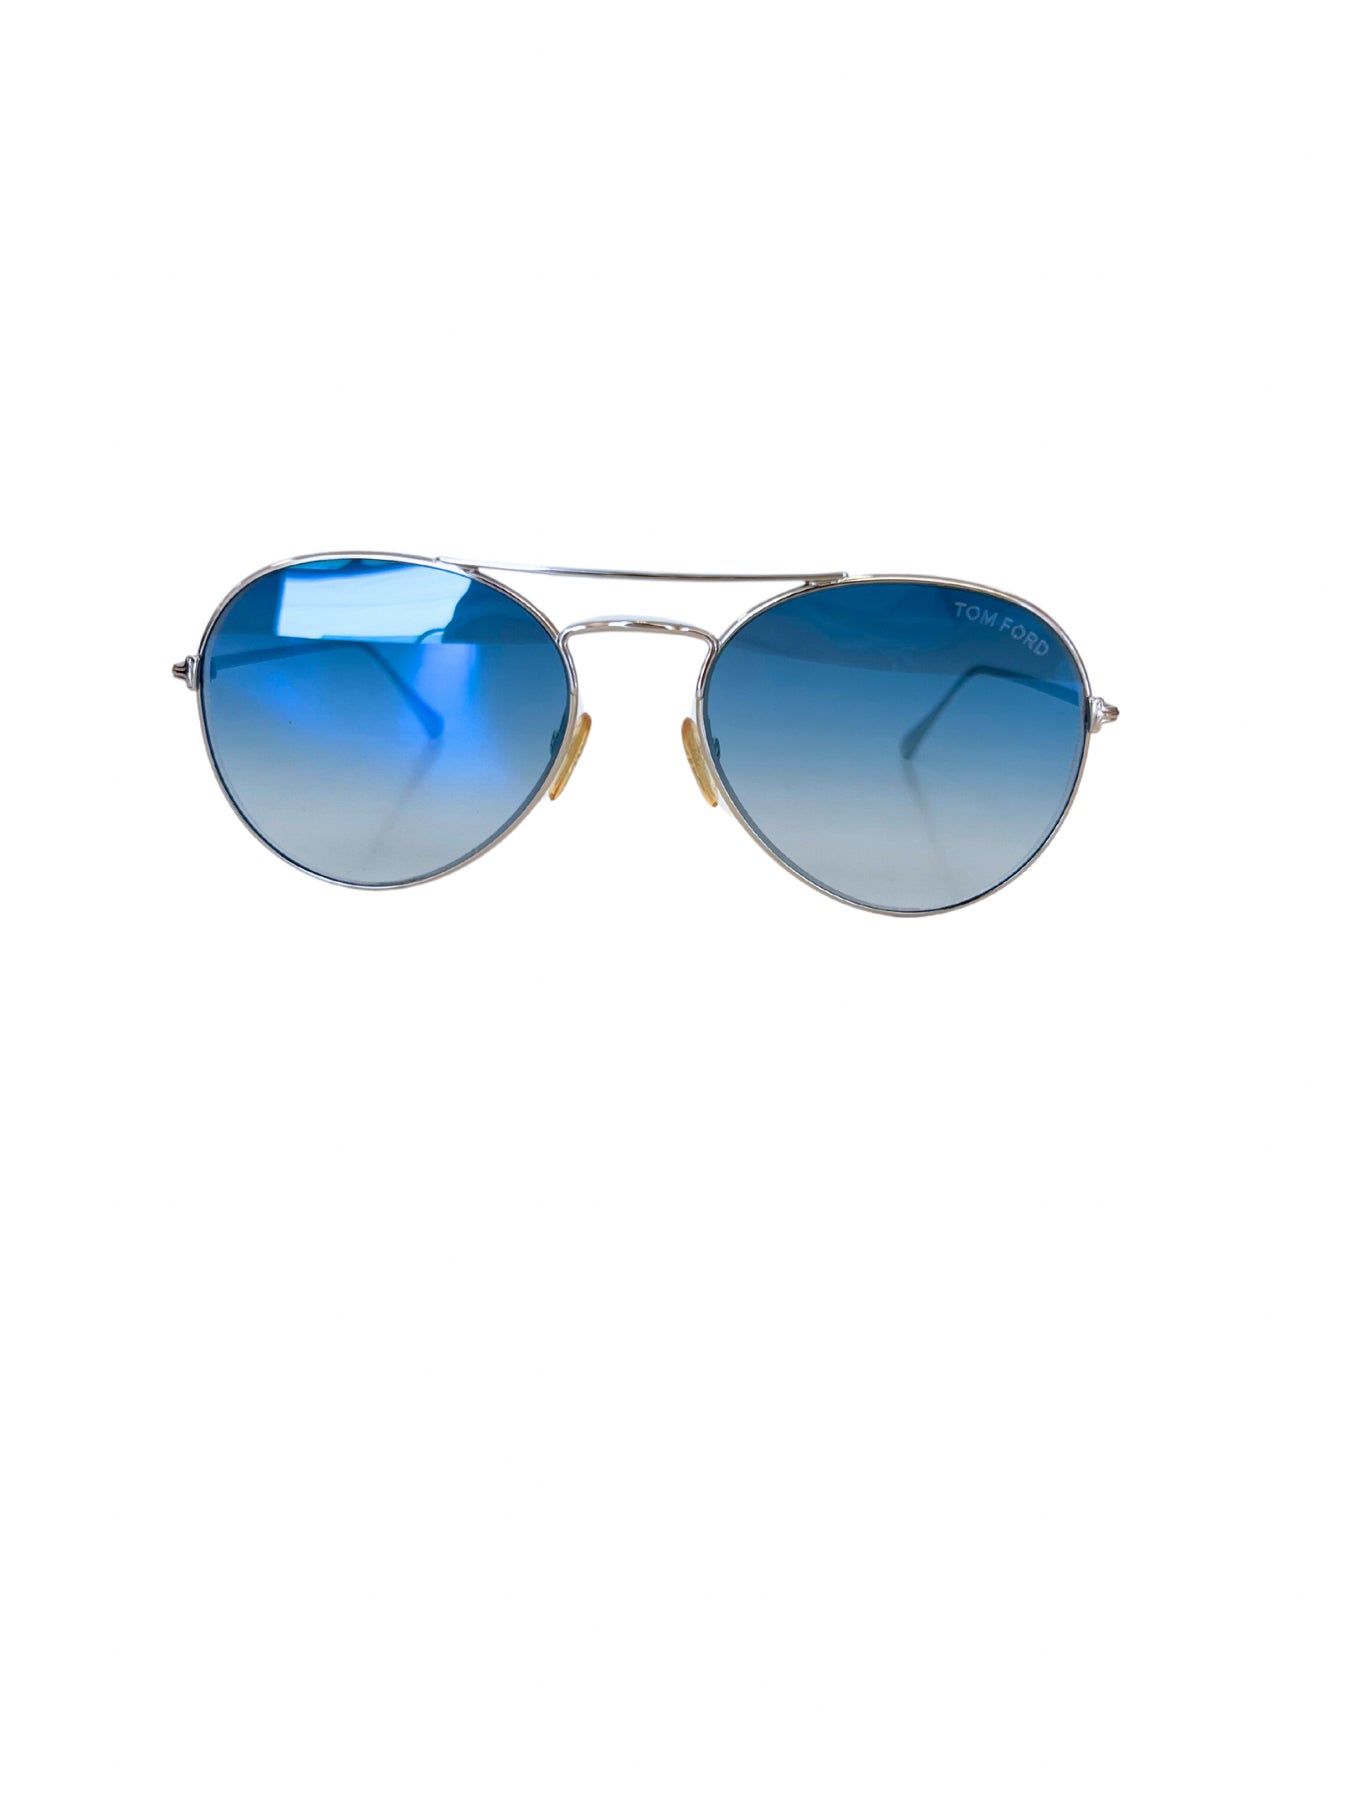 Tom Ford Ace2 Aviator Sunglasses